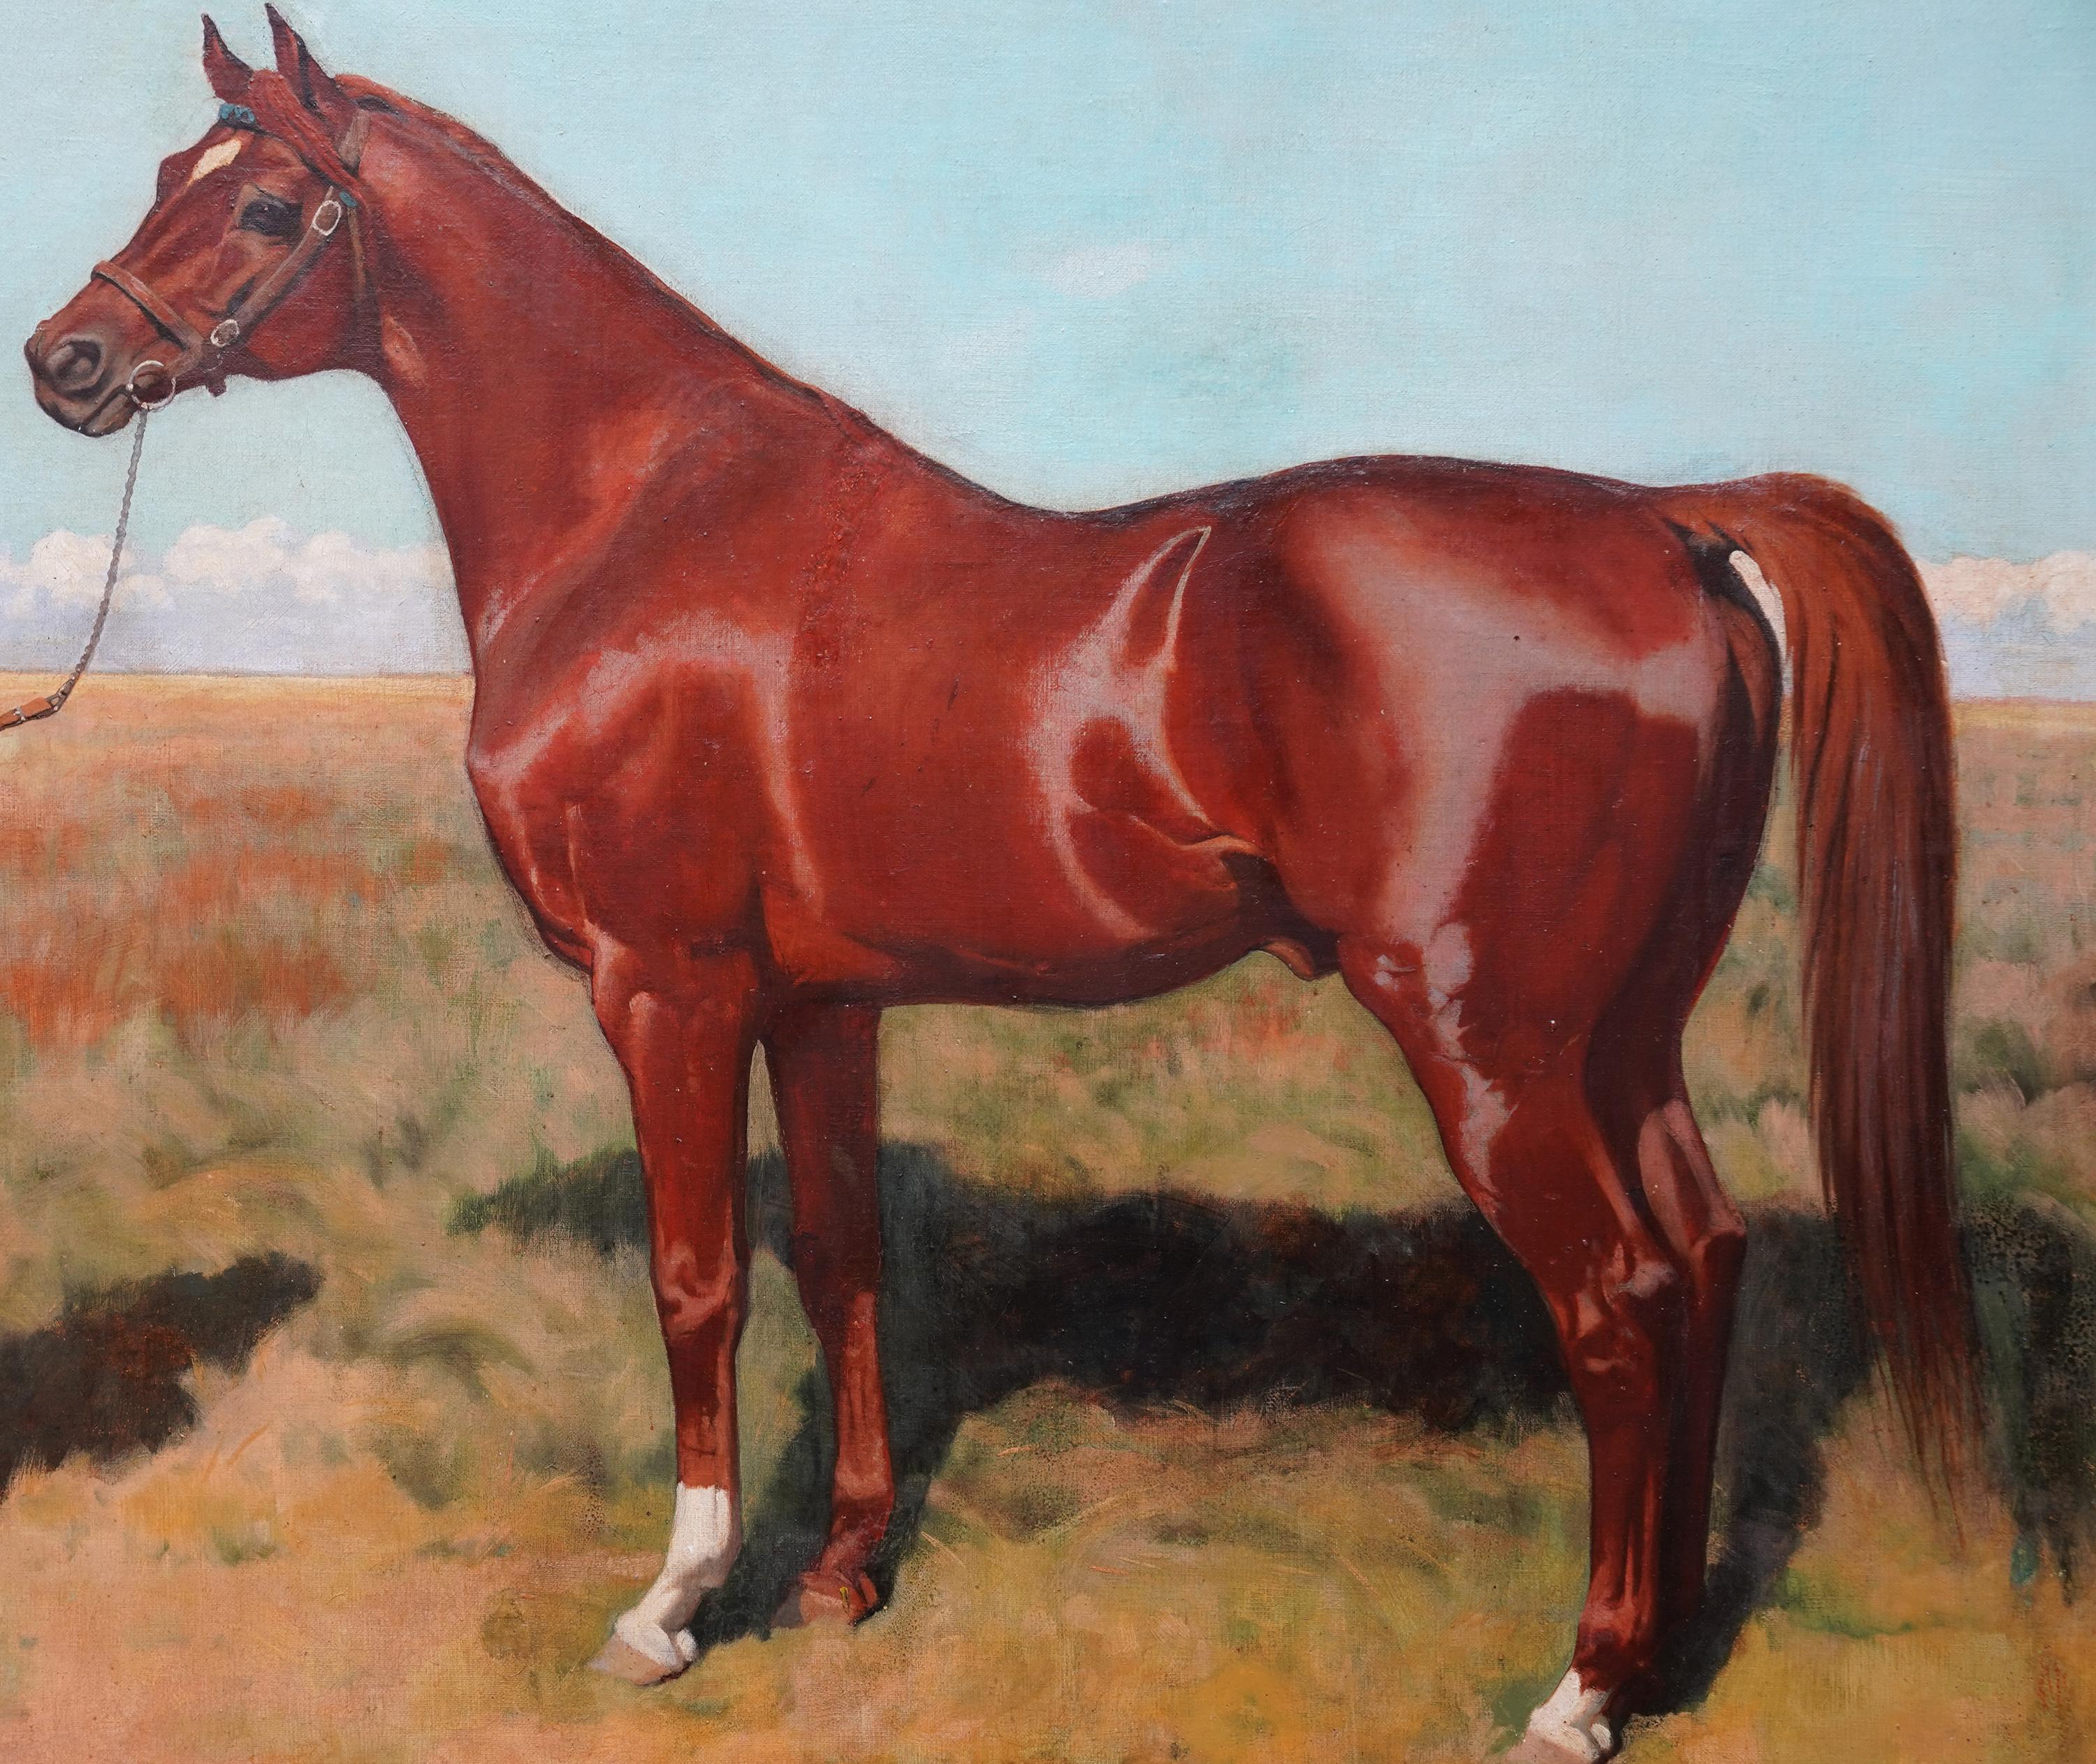 Cette superbe peinture à l'huile britannique du XIXe siècle est l'œuvre d'un grand amateur de chevaux, George Gascoyne. Peint en 1889, ce cheval alezan né en France est Phoenix. Bien qu'il soit essentiellement un miler, Phoenix (parfois orthographié